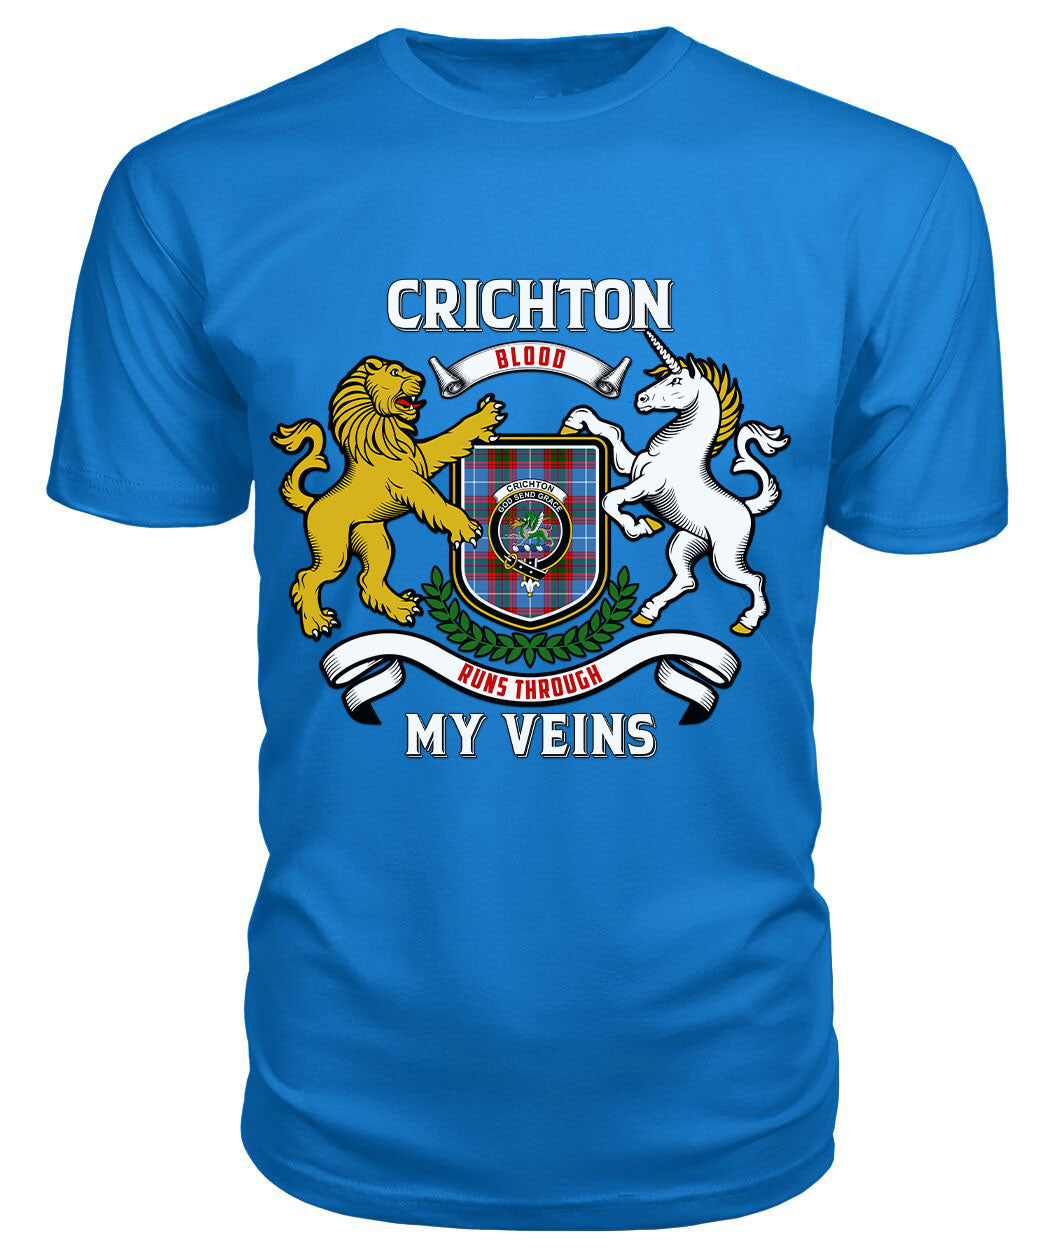 Crichton Tartan Crest 2D T-shirt - Blood Runs Through My Veins Style